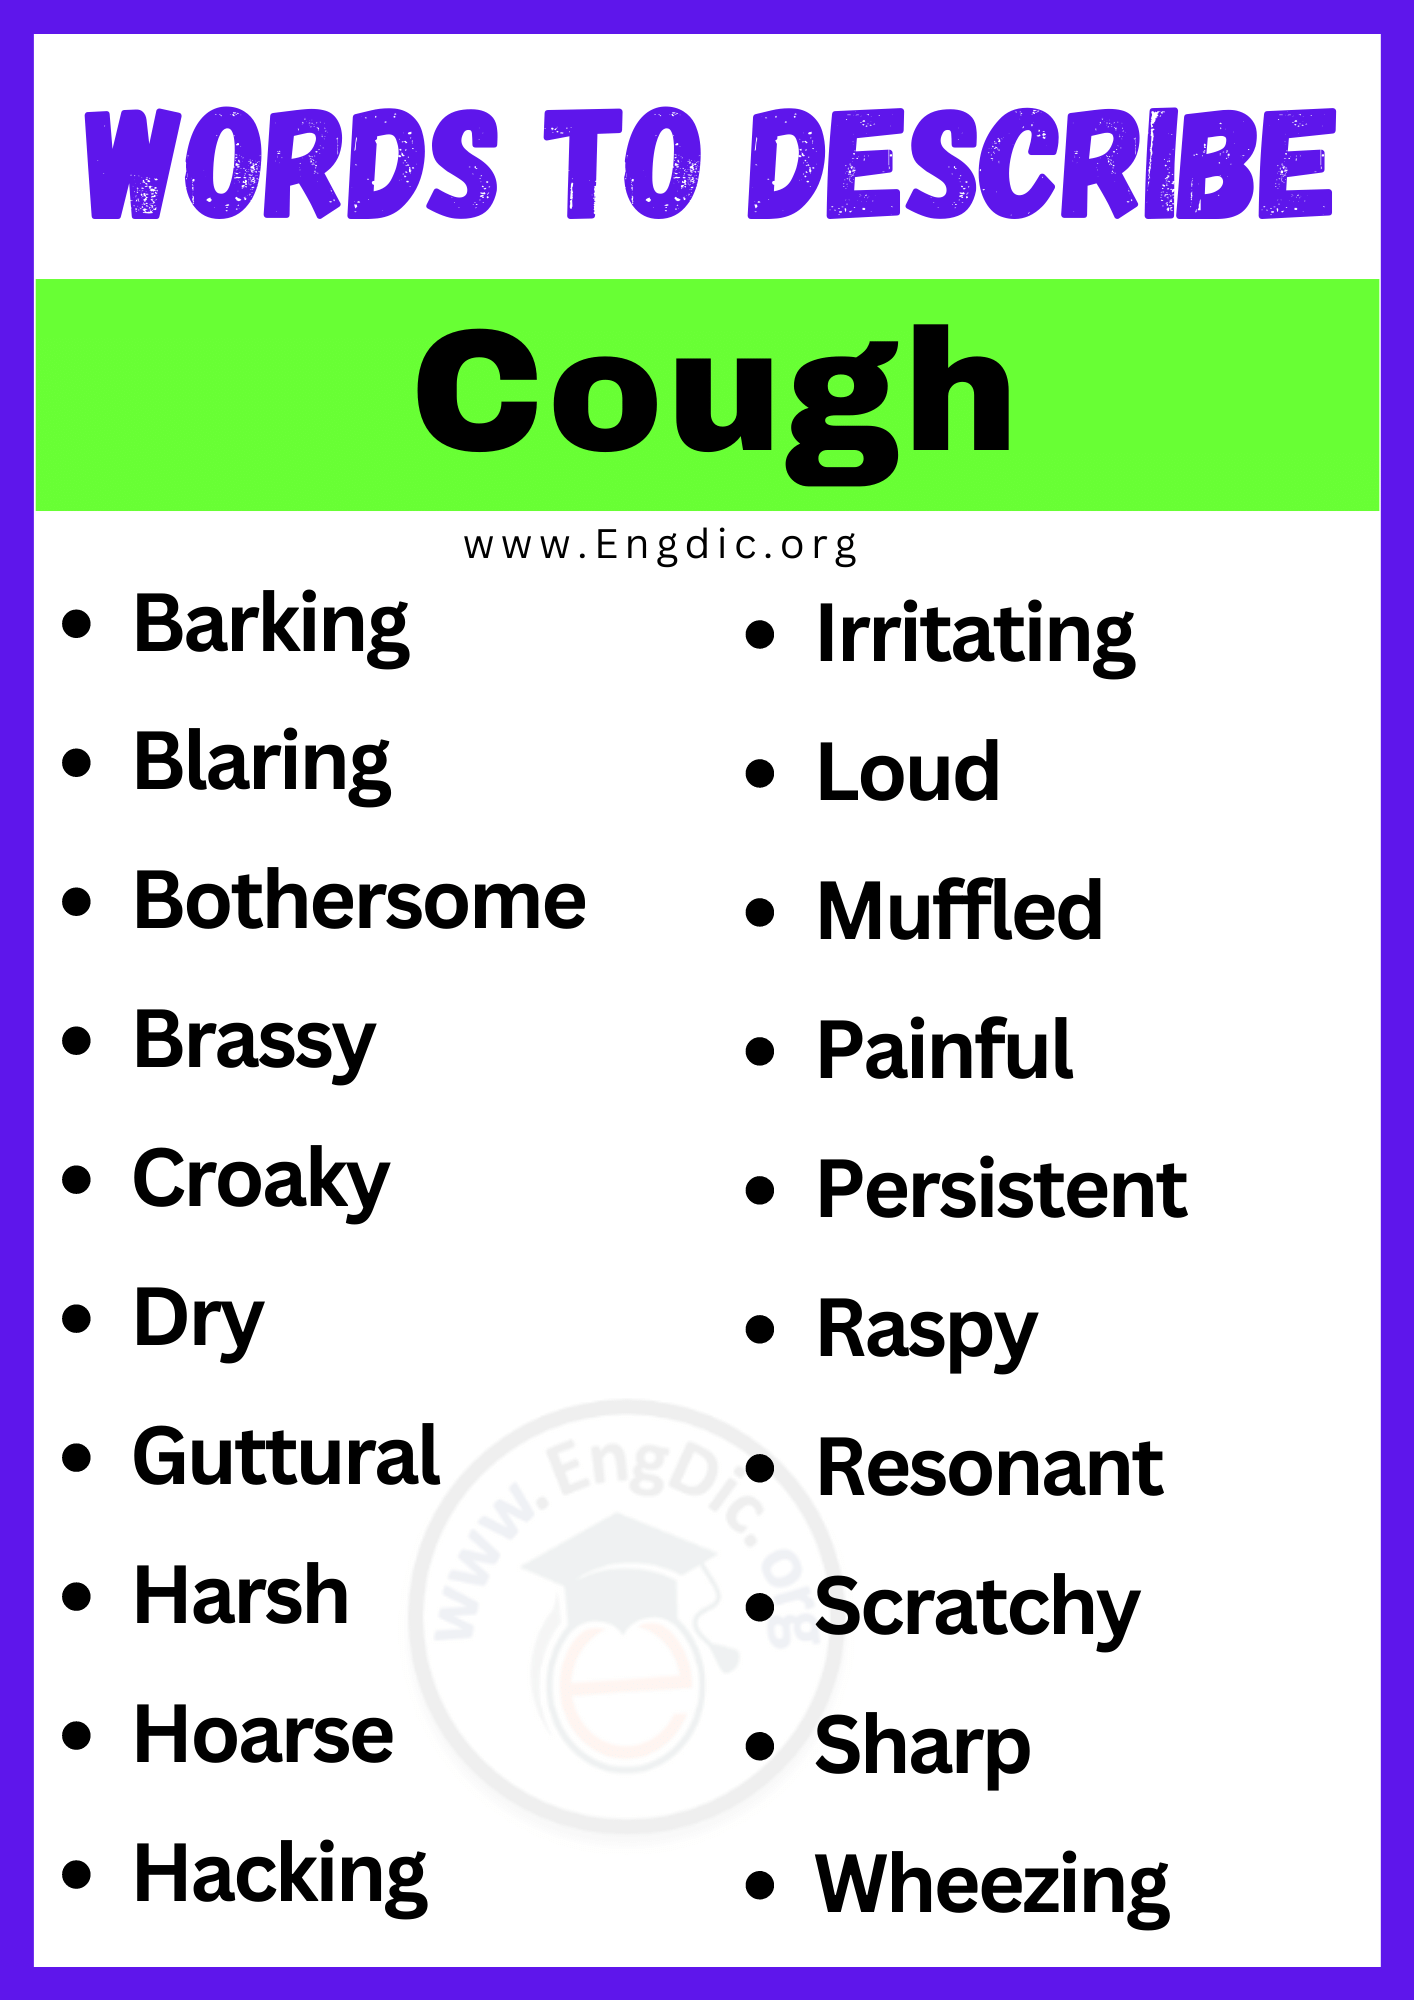 Words to Describe Cough